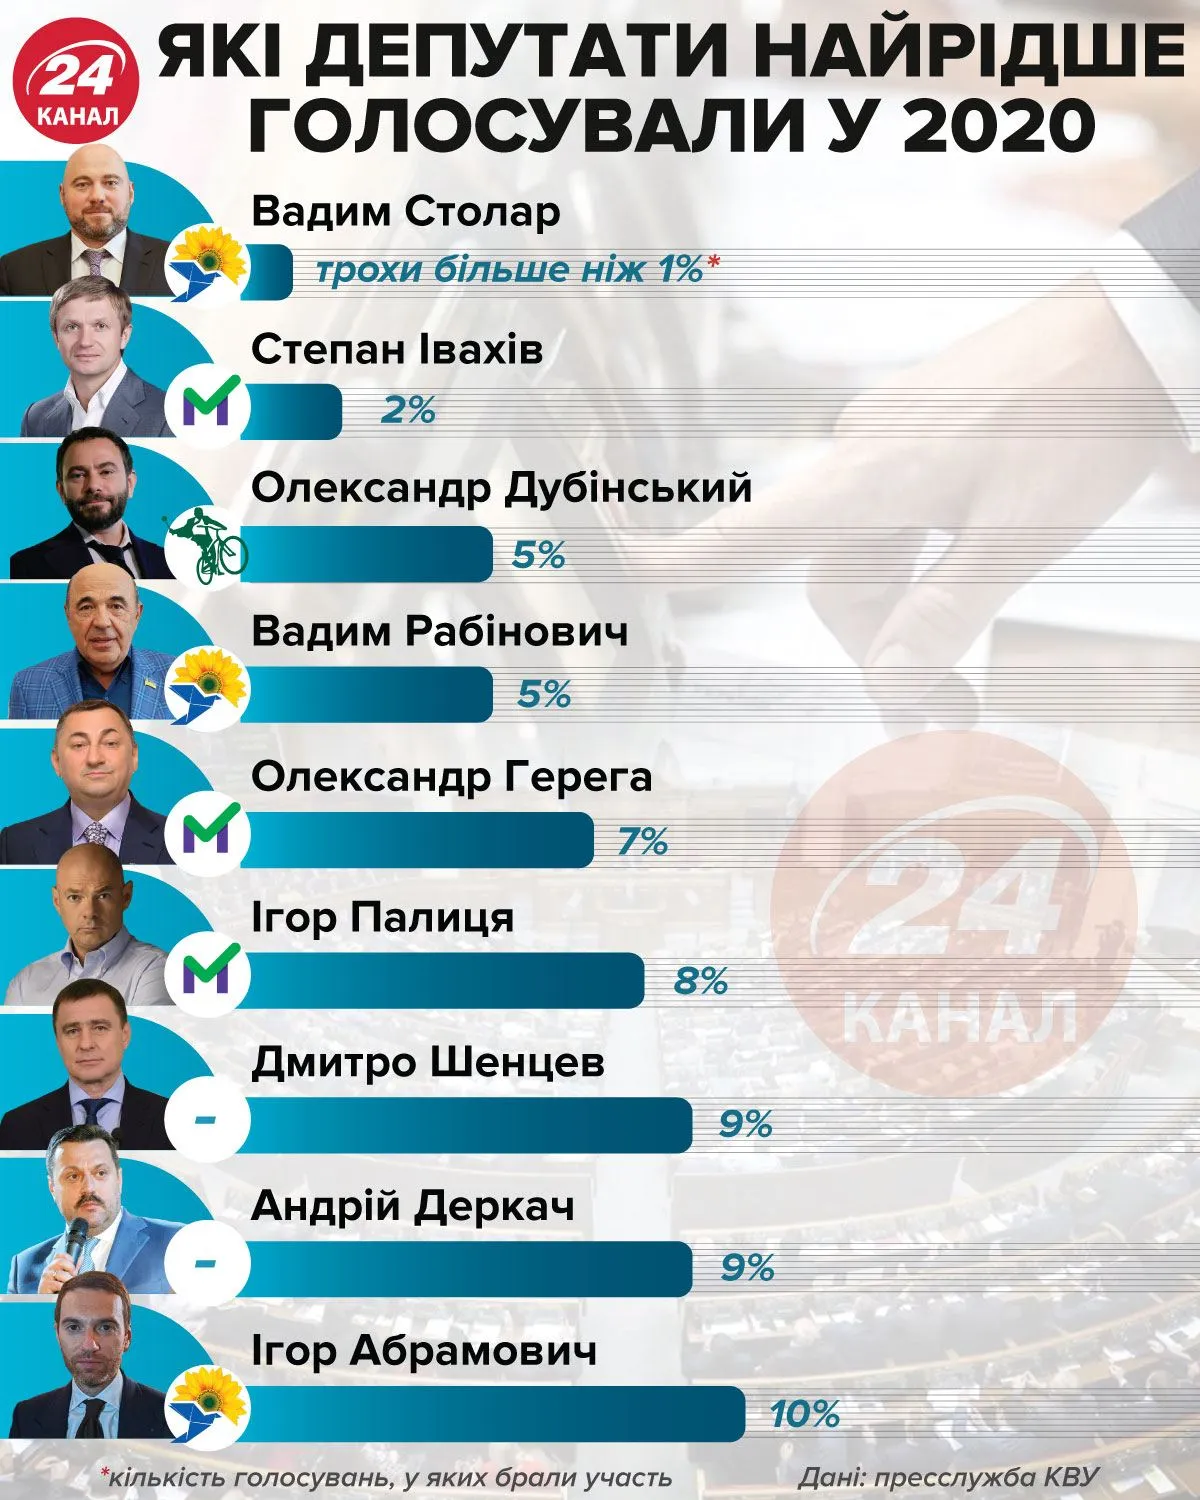 Кто из депутатов меньше голосовал в 2020 году Инфографика 24 канала